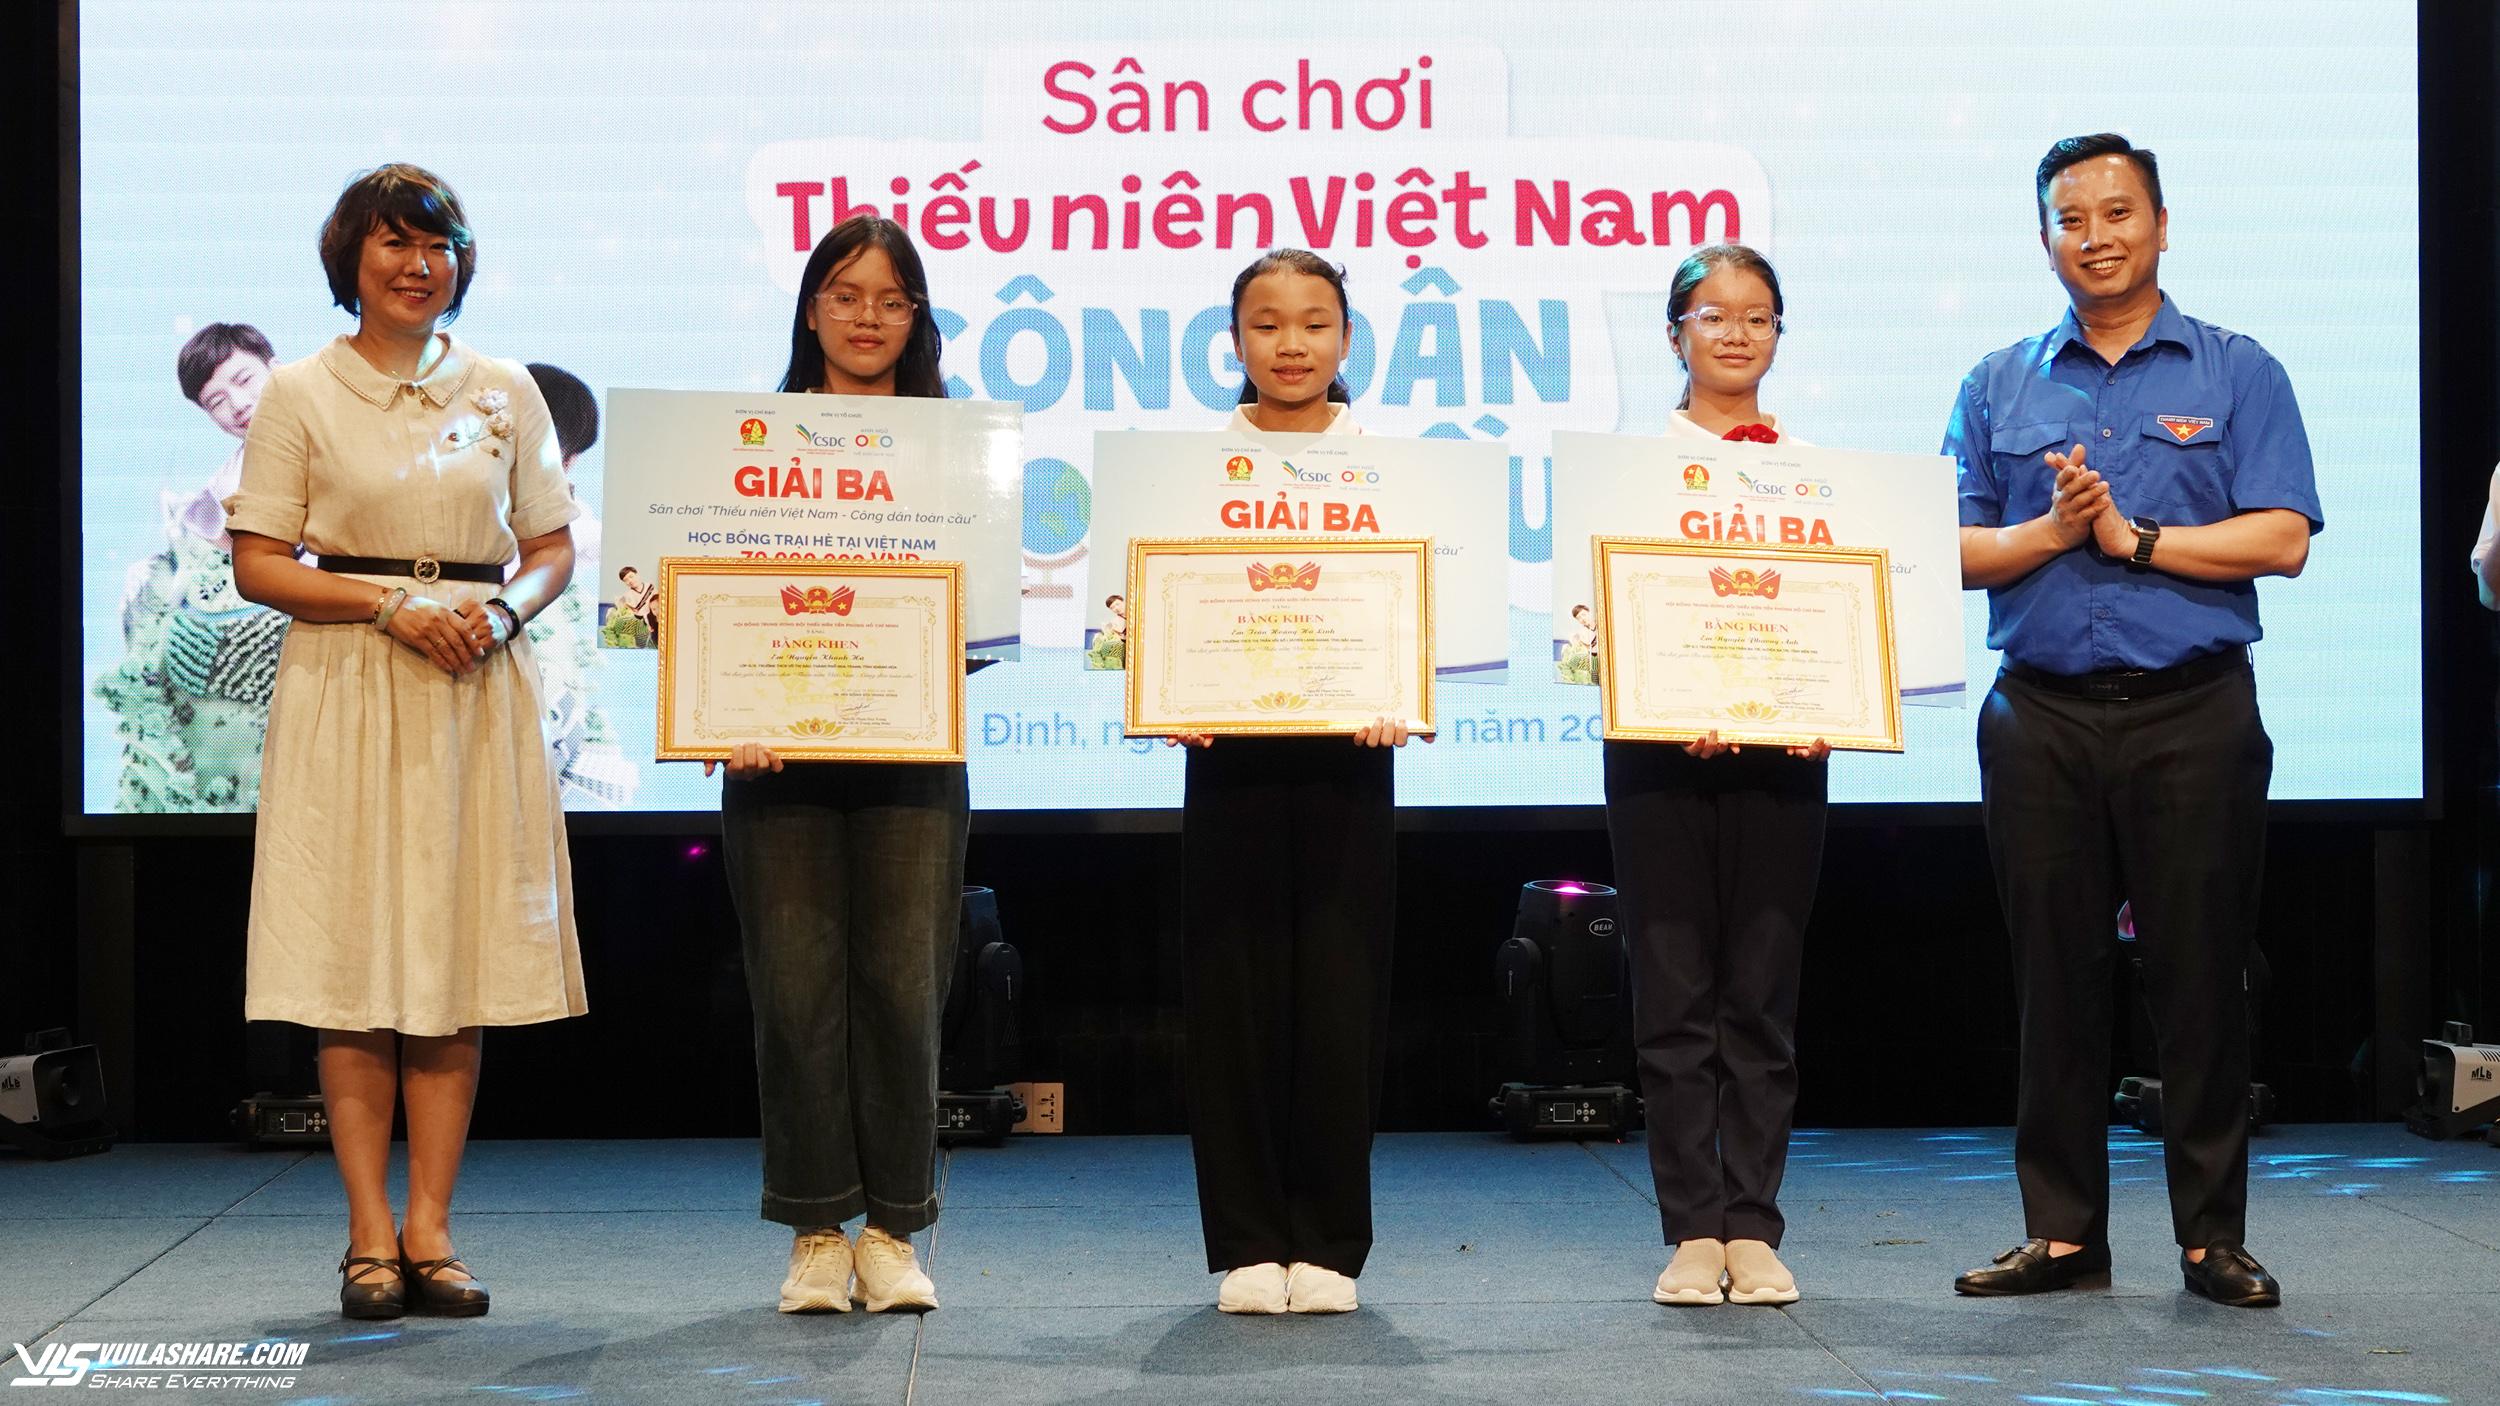 Trao giải thưởng ‘khủng’ tại sân chơi ‘Thiếu niên Việt Nam - Công dân toàn cầu’- Ảnh 5.